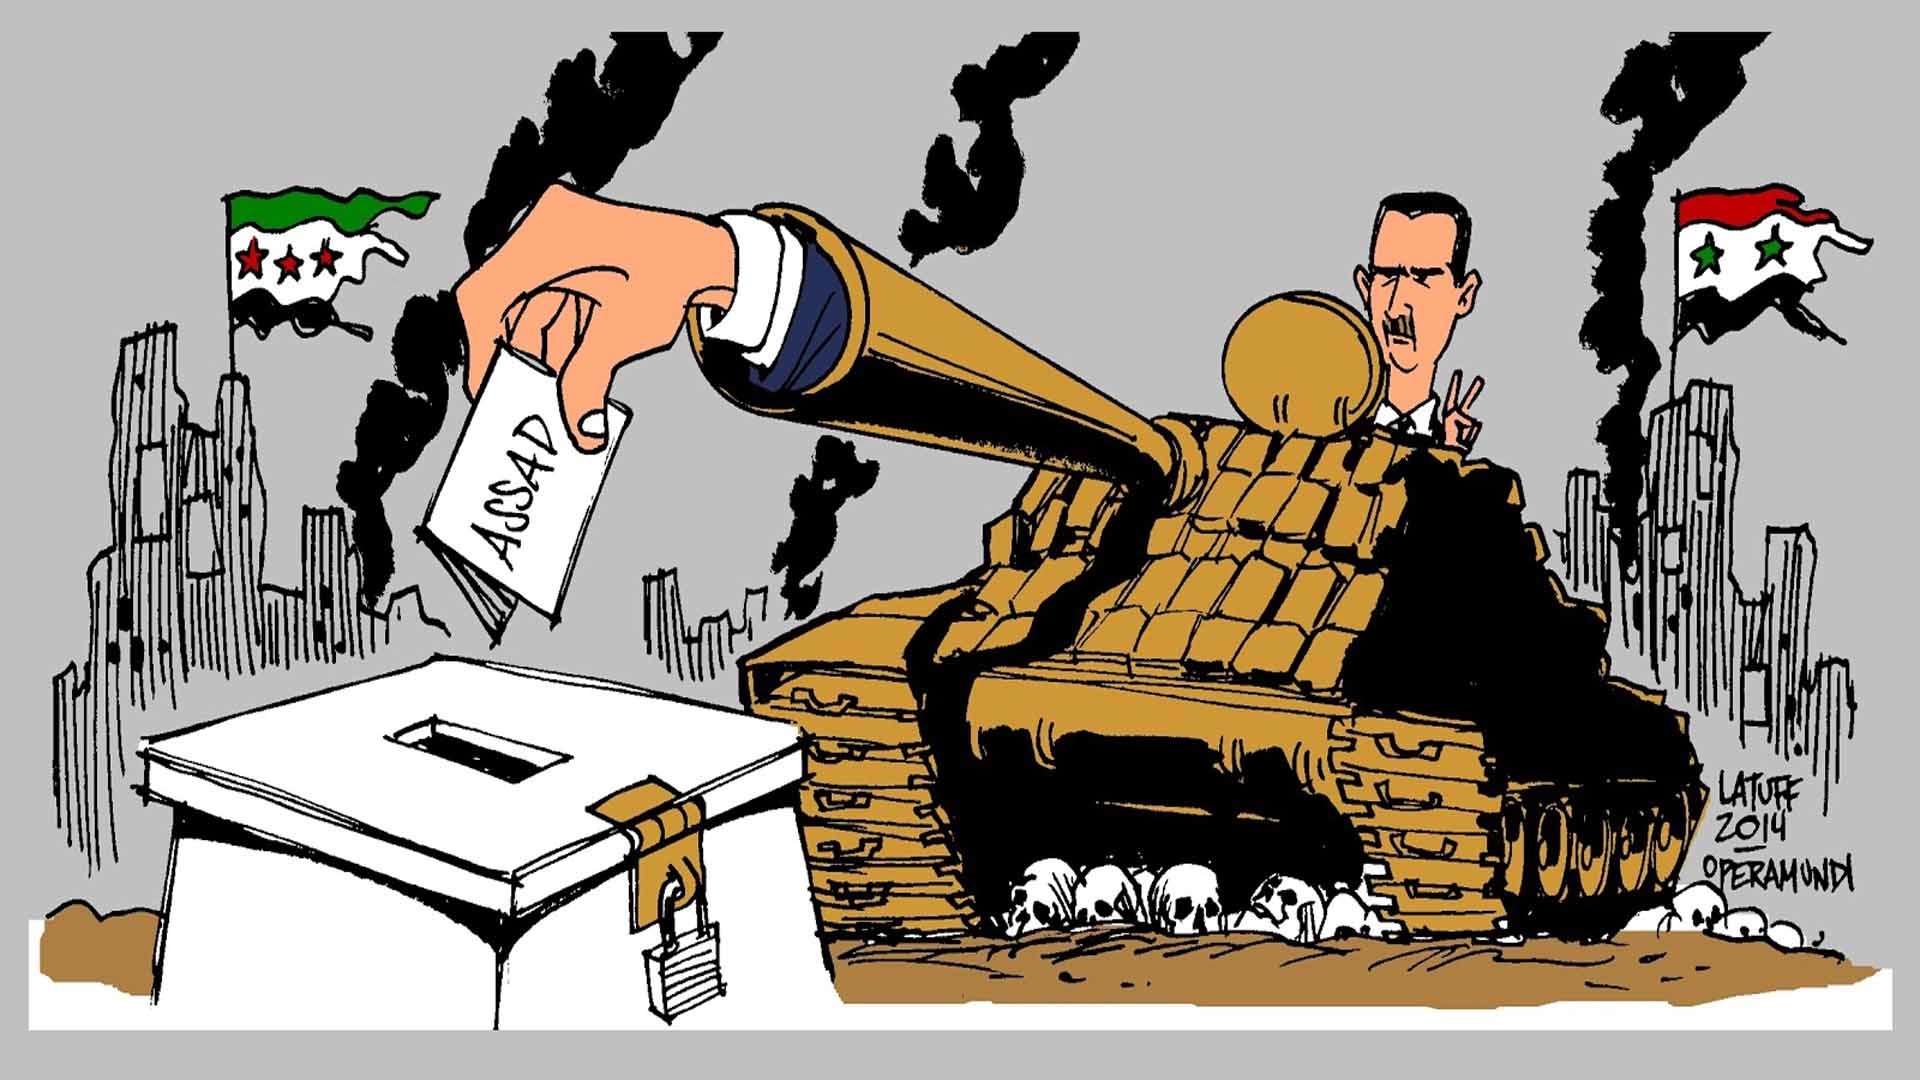 تقويم منطقي لسيرك الانتخابات في سورية: الأرقام الصادرة هي محض اختراعات